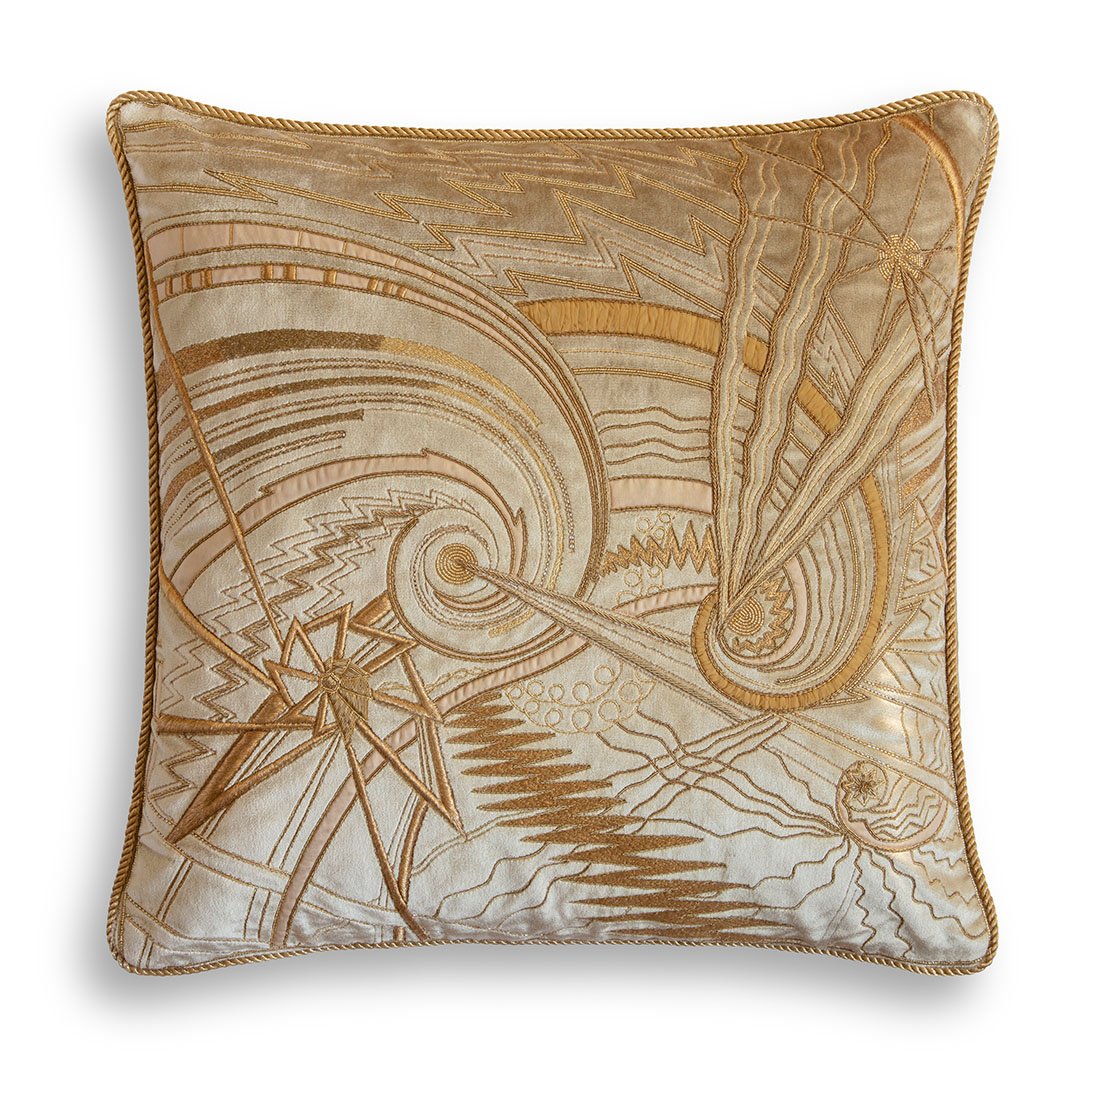 Andromeda cushion in Capri silk velvet - Sable - Beaumont & Fletcher